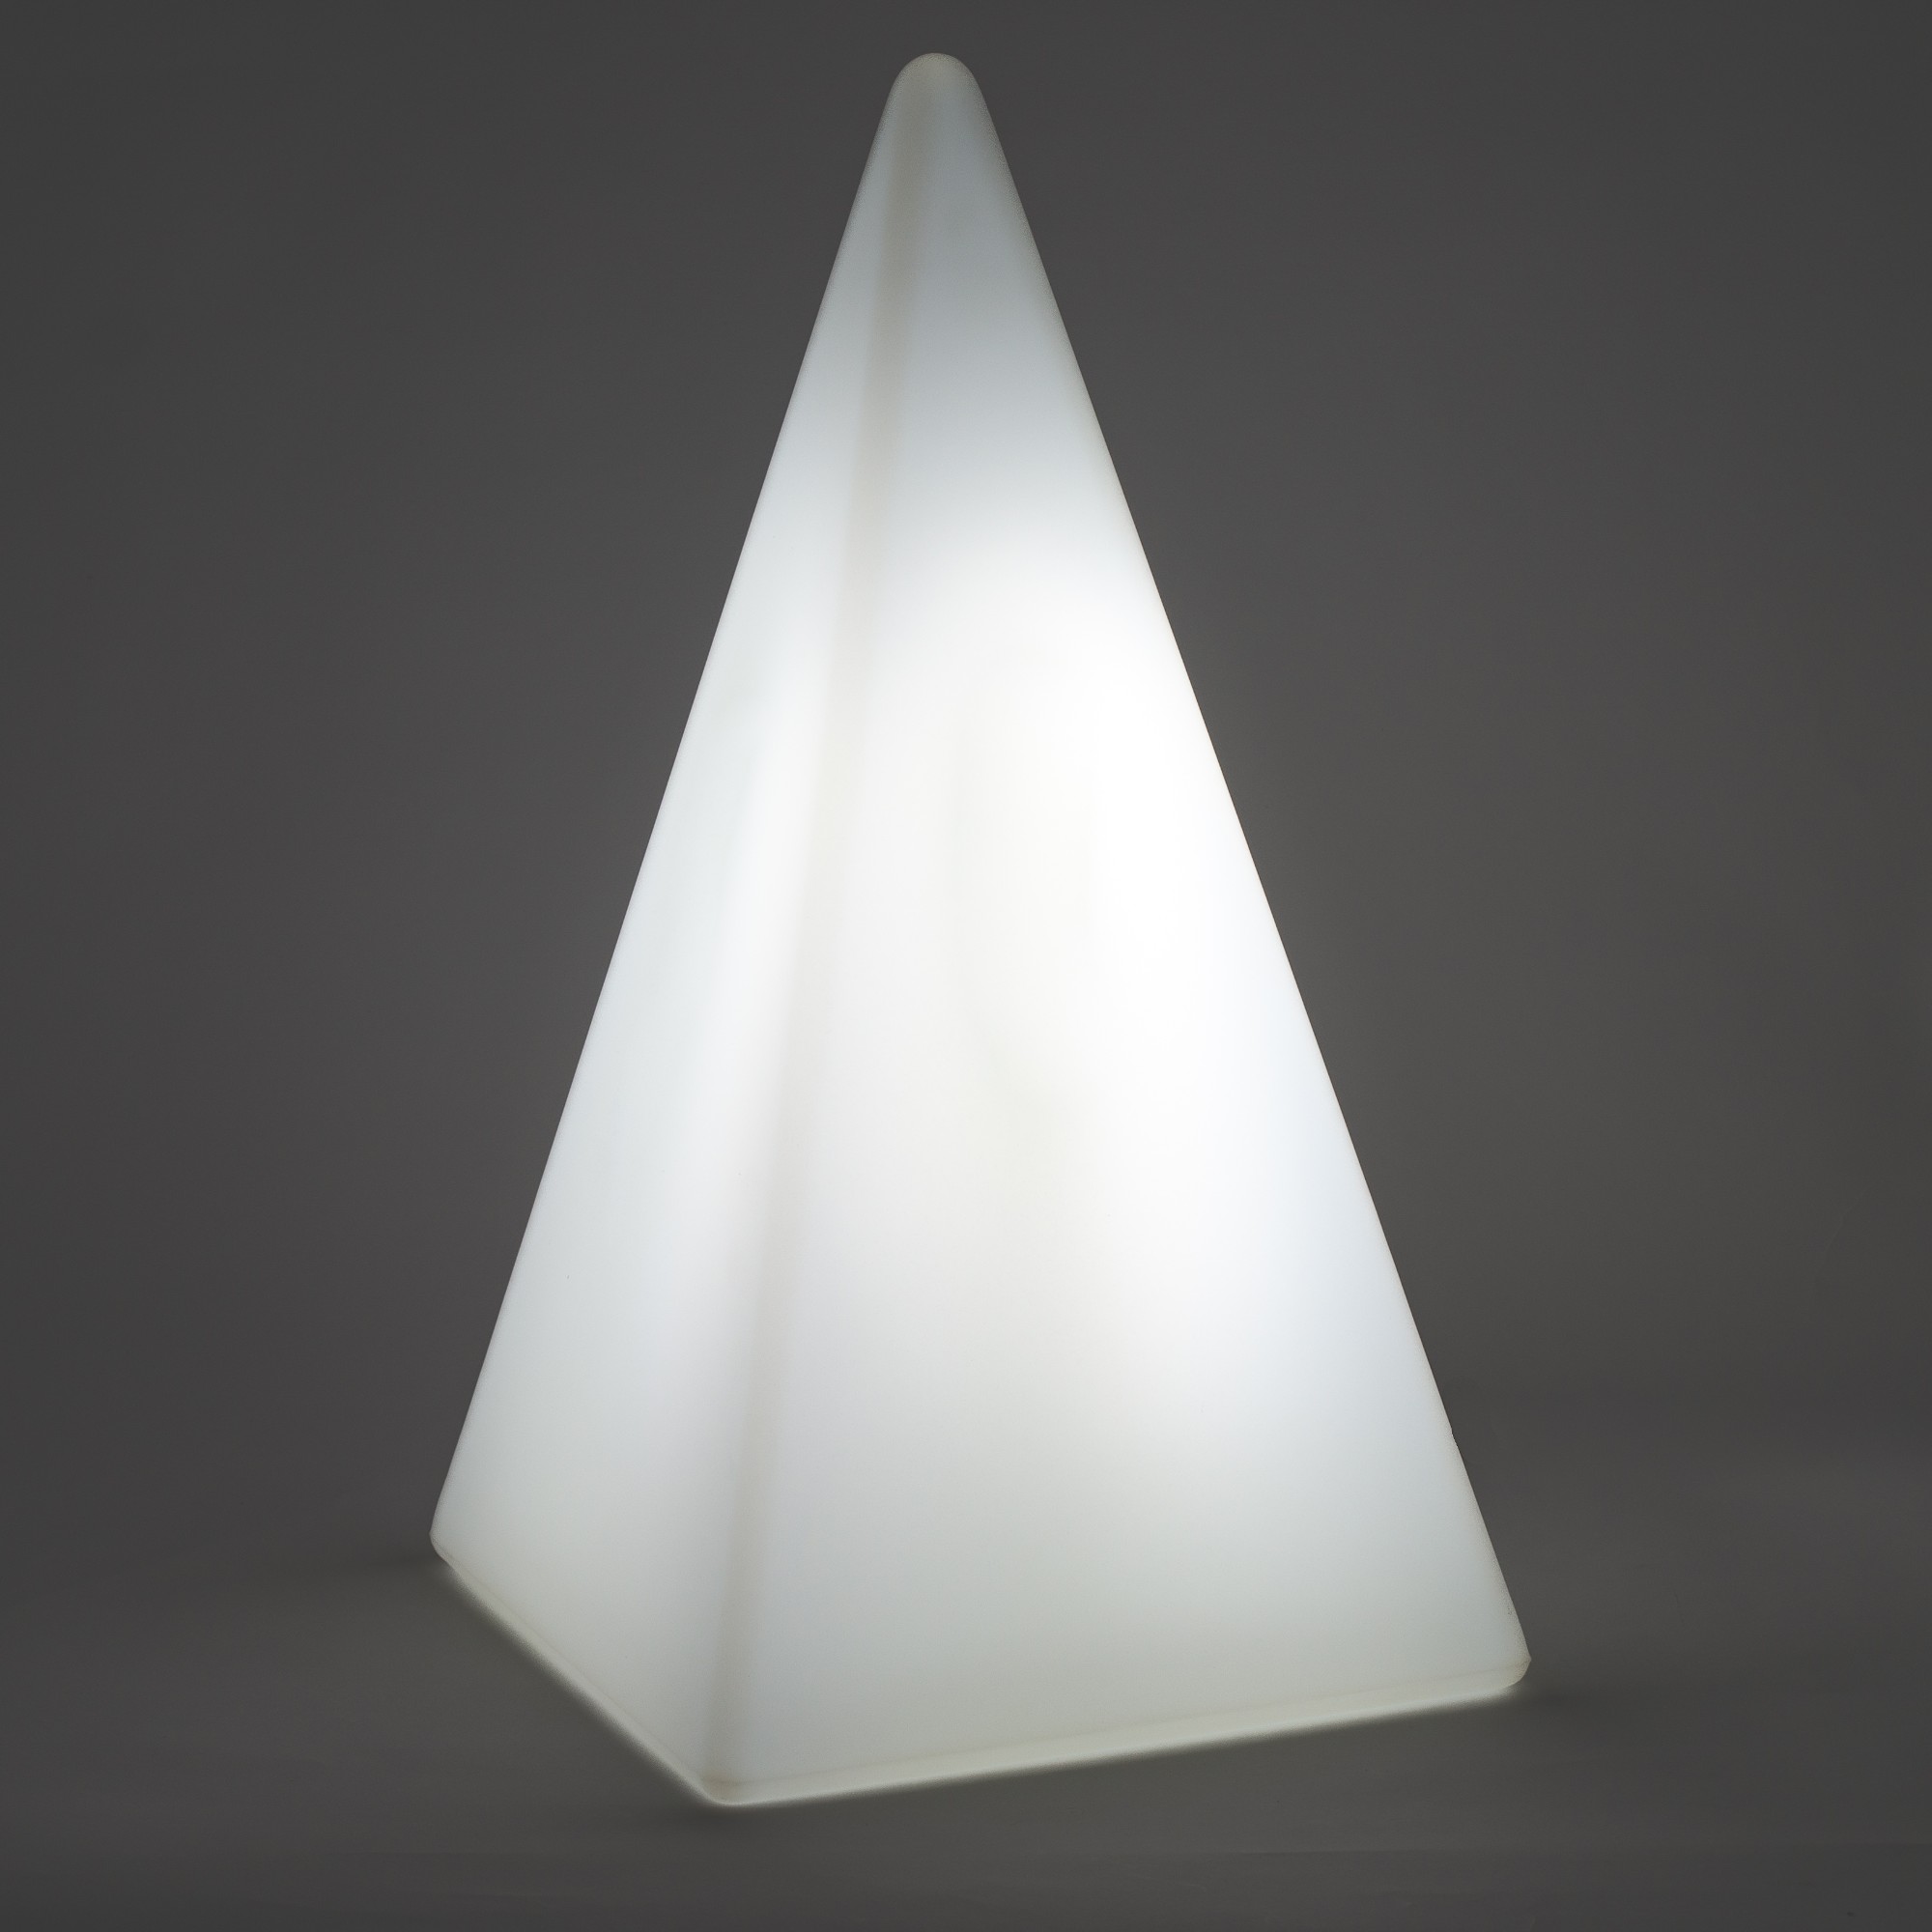 70306 Standleuchte Pyramide 73 cm der Firma EPSTEIN Design Leuchten